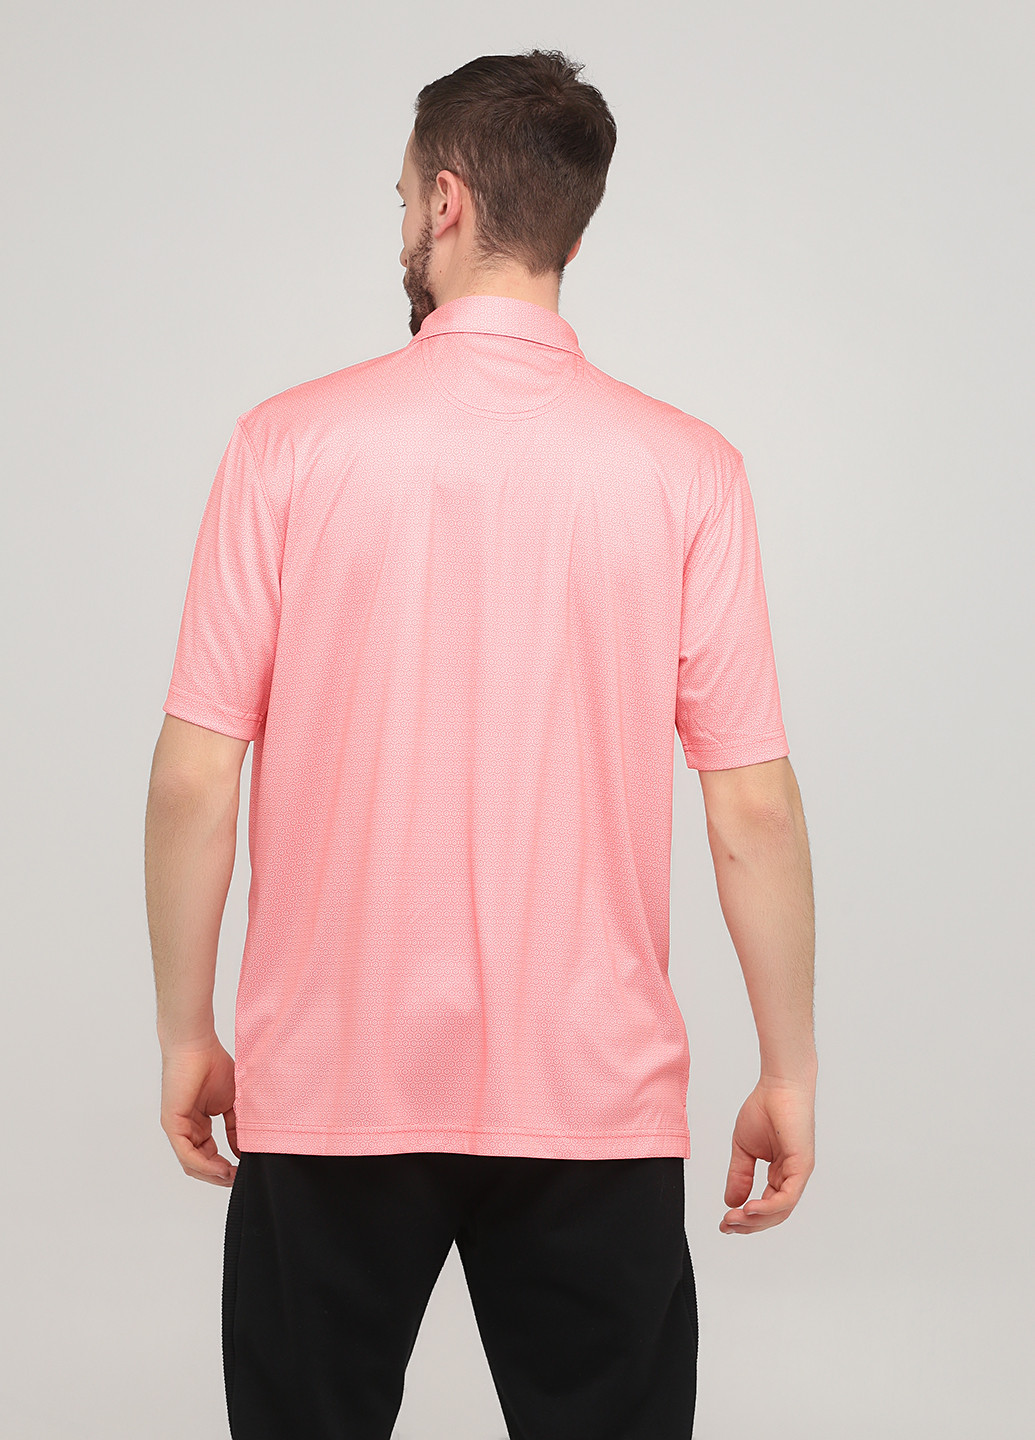 Коралловая футболка-поло для мужчин Greg Norman в горошек